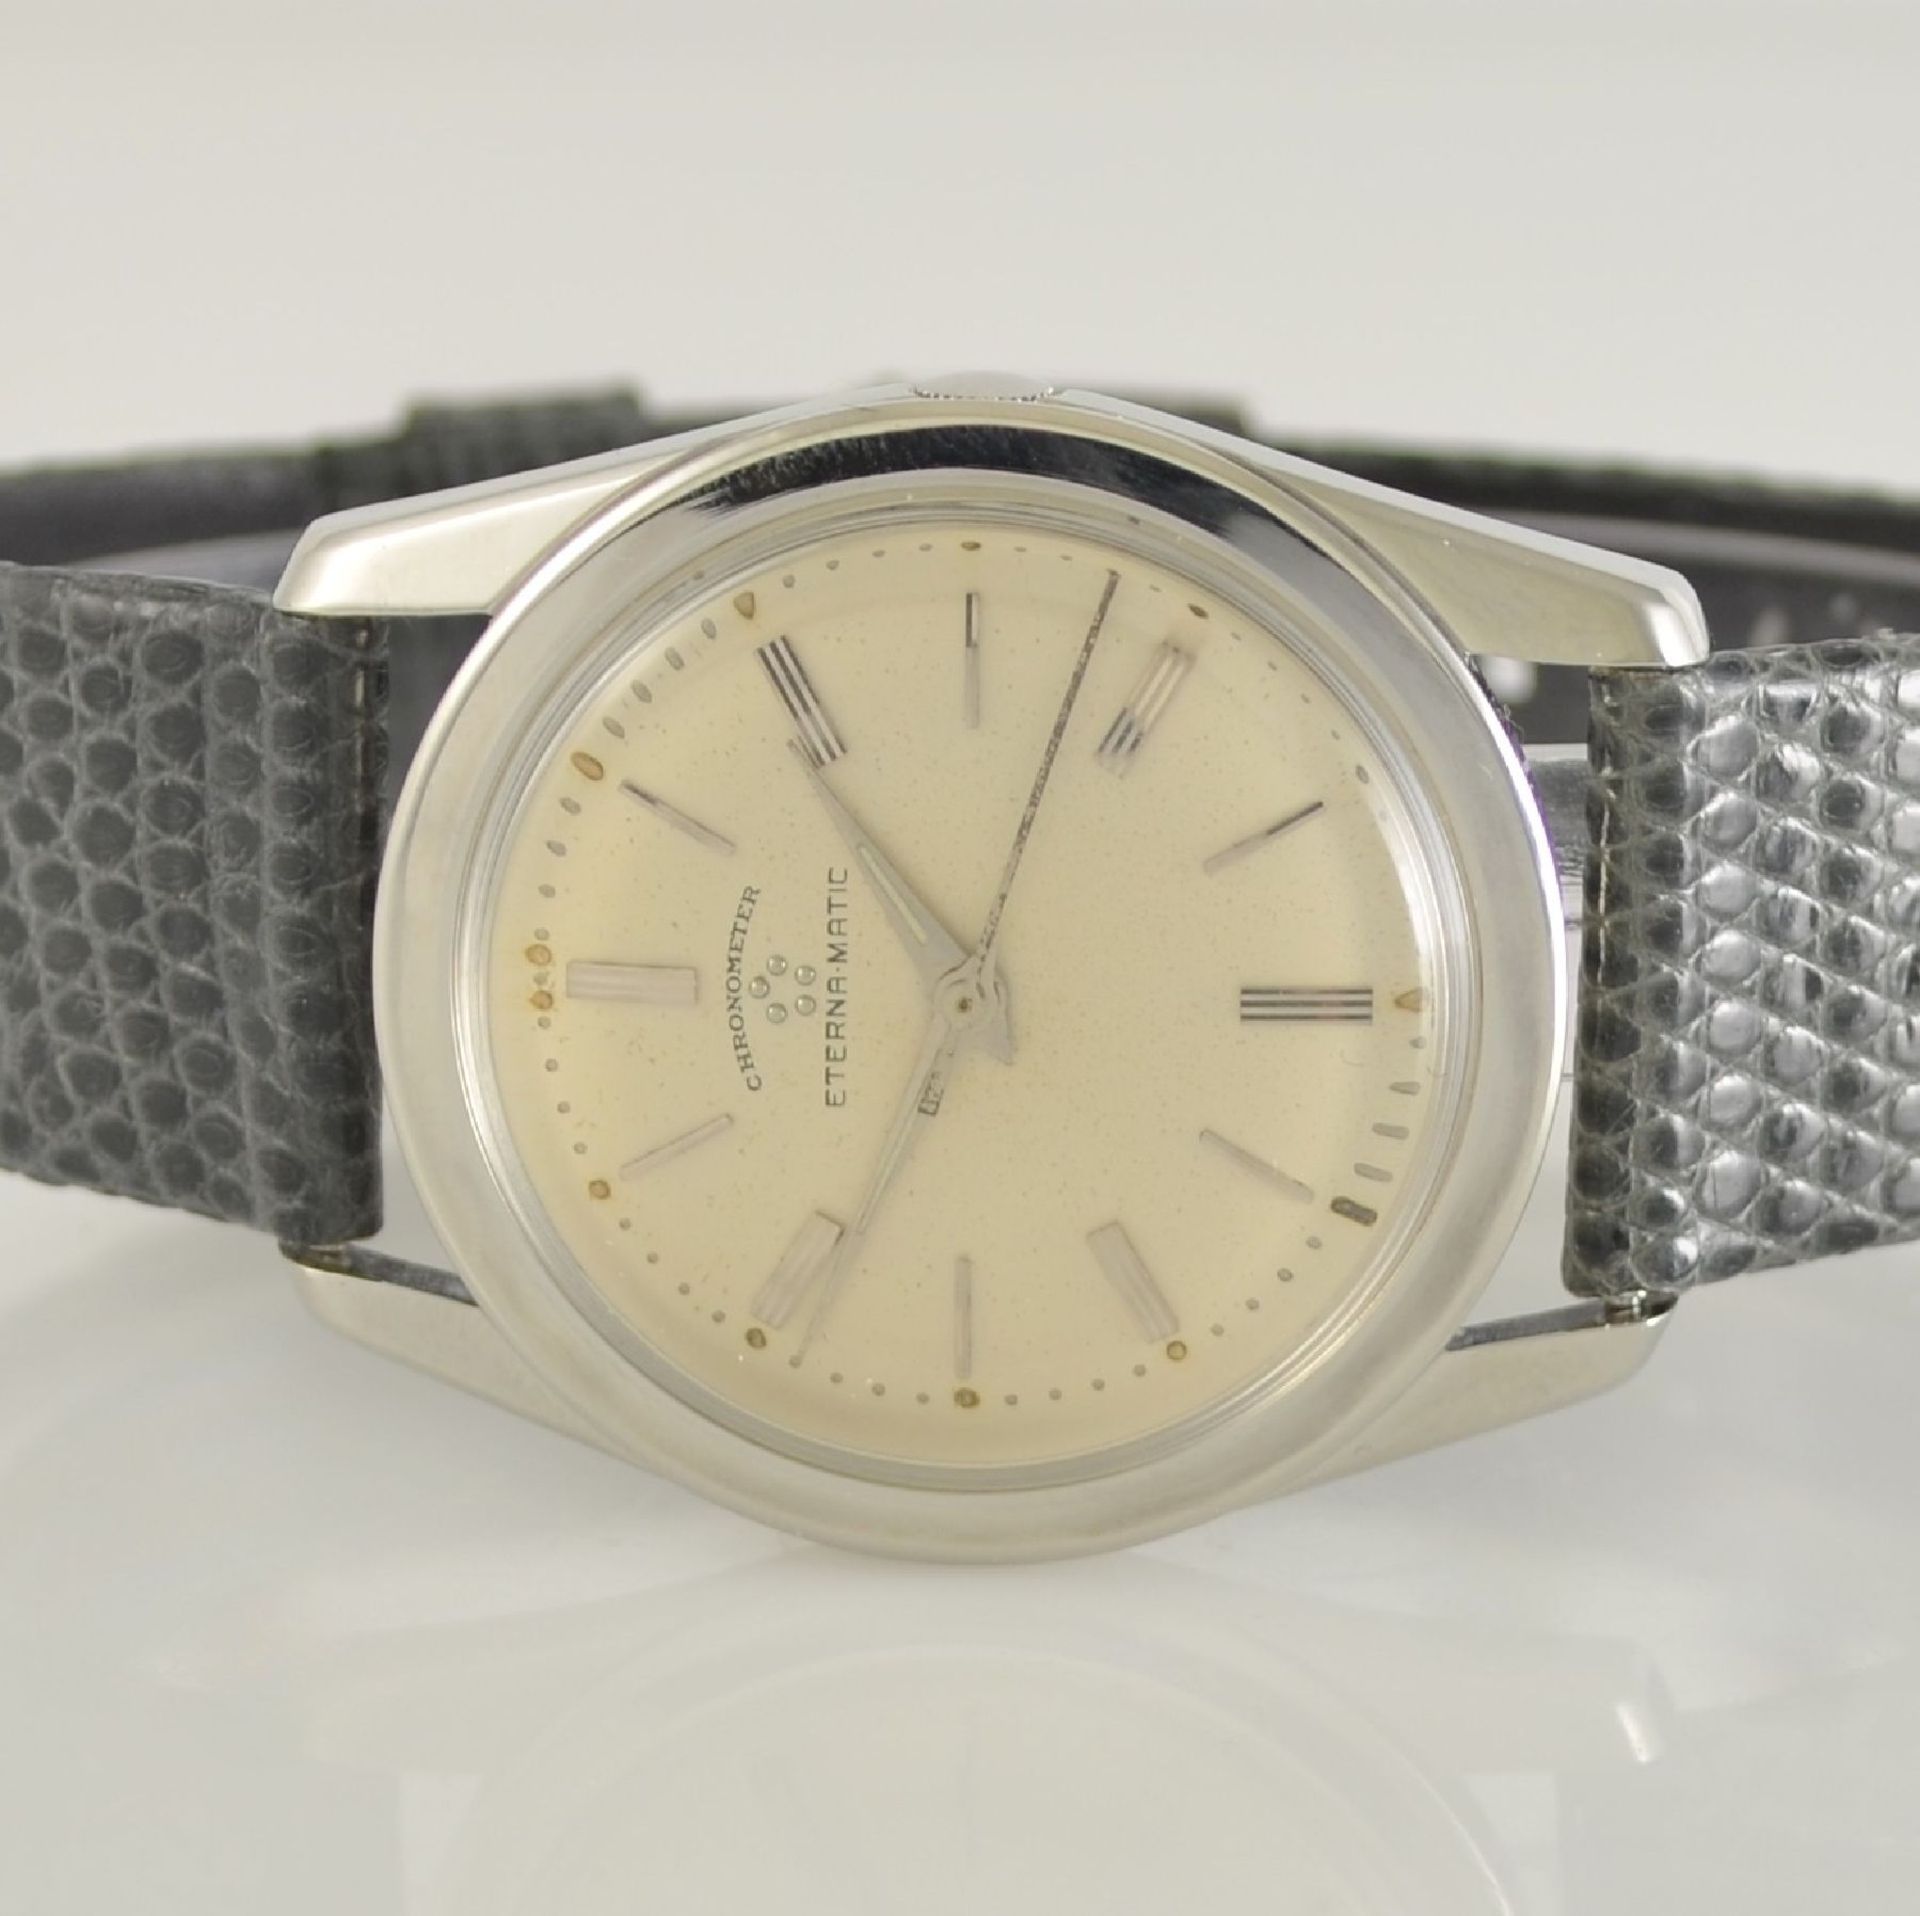 ETERNA-MATIC 2 chronometer in steel, Switzerland around 1960, case backs screwed down, silvered - Bild 7 aus 12